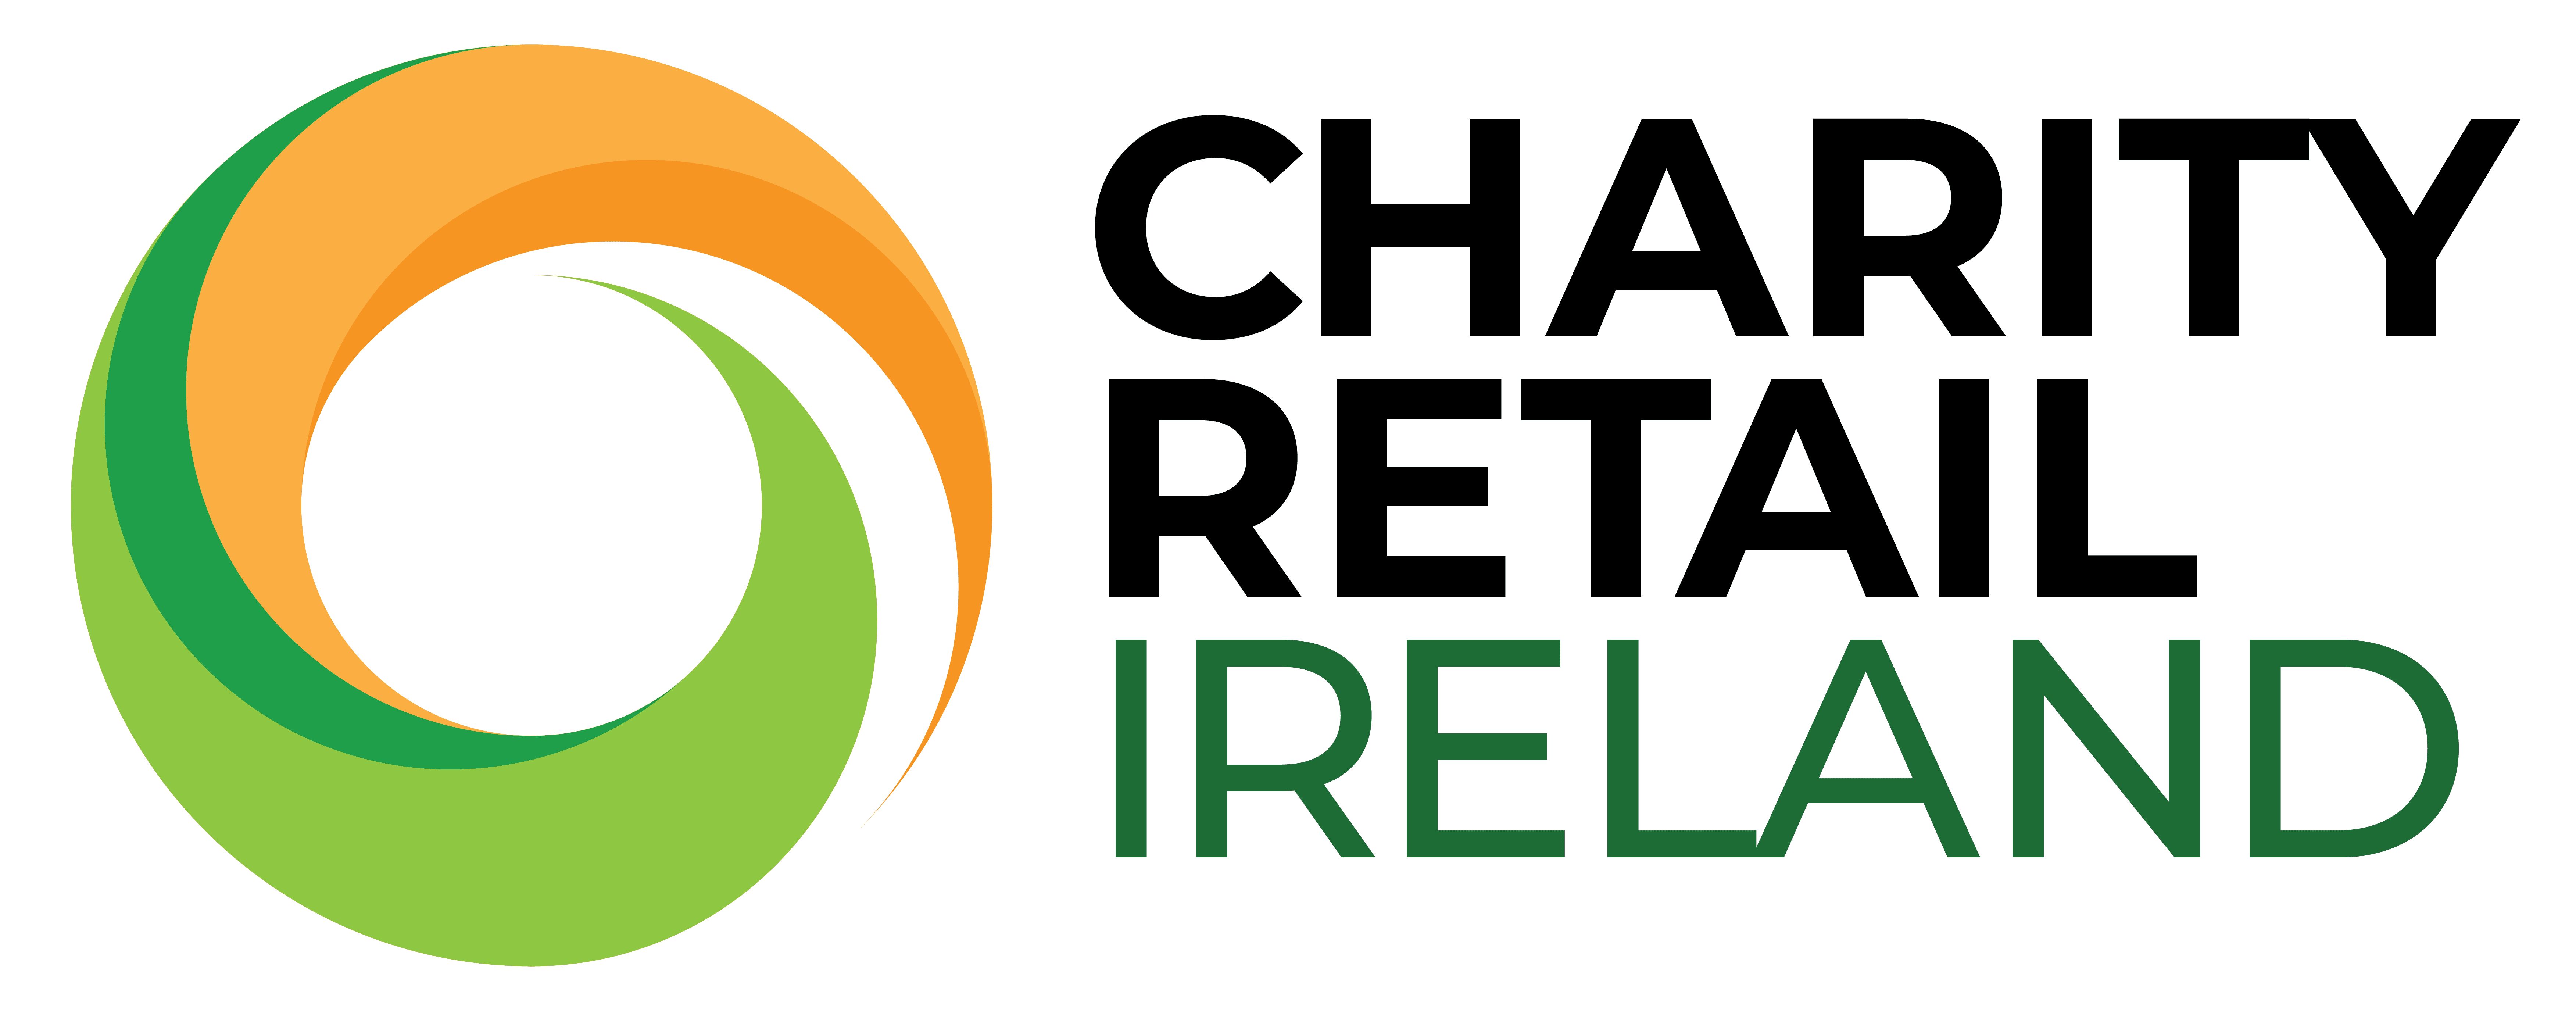 Charity Retail Ireland